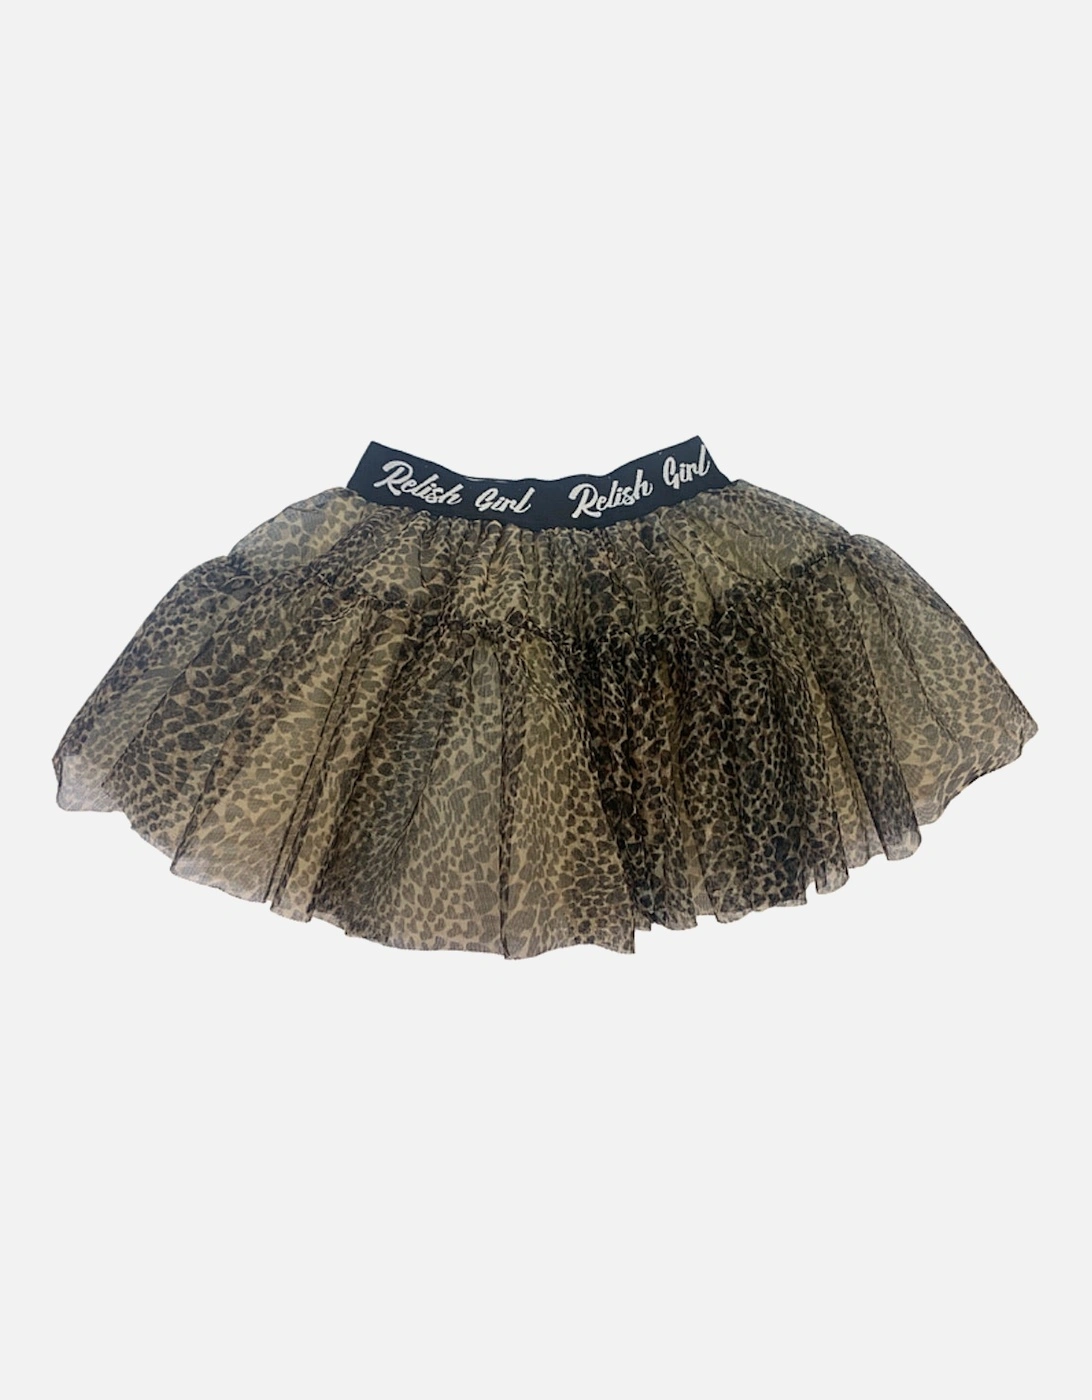 Animal Print Skirt, 2 of 1